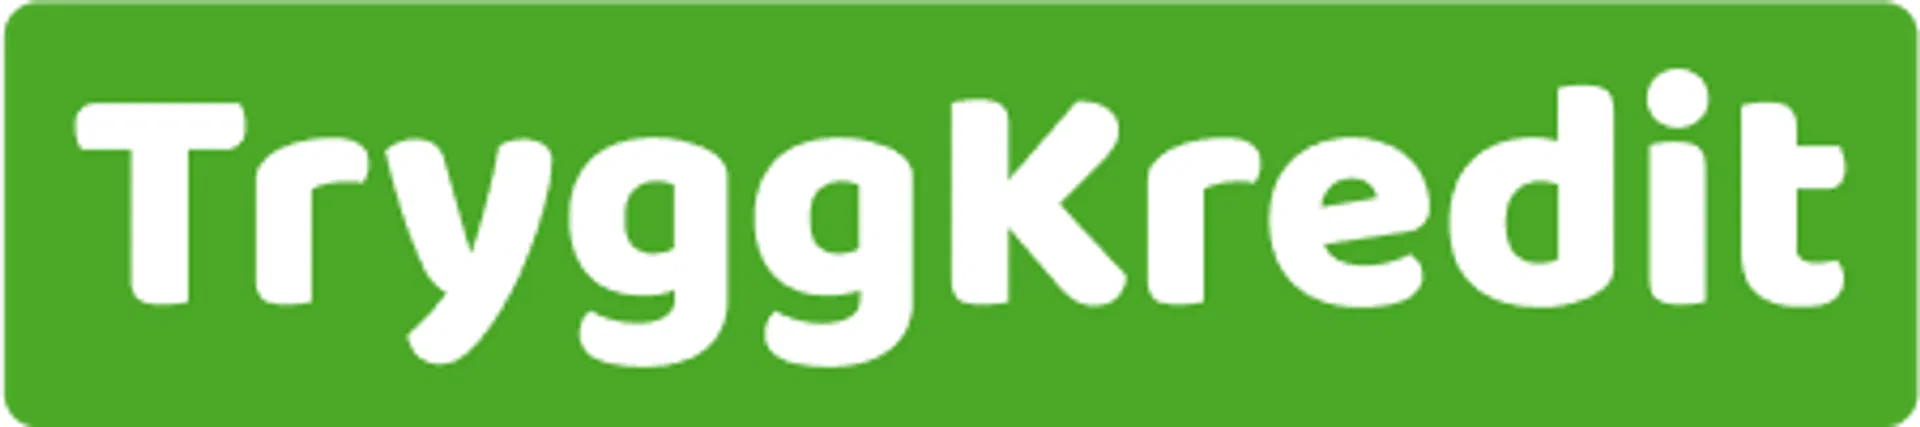 Trygg kredit logga i vit text med grön bakgrund